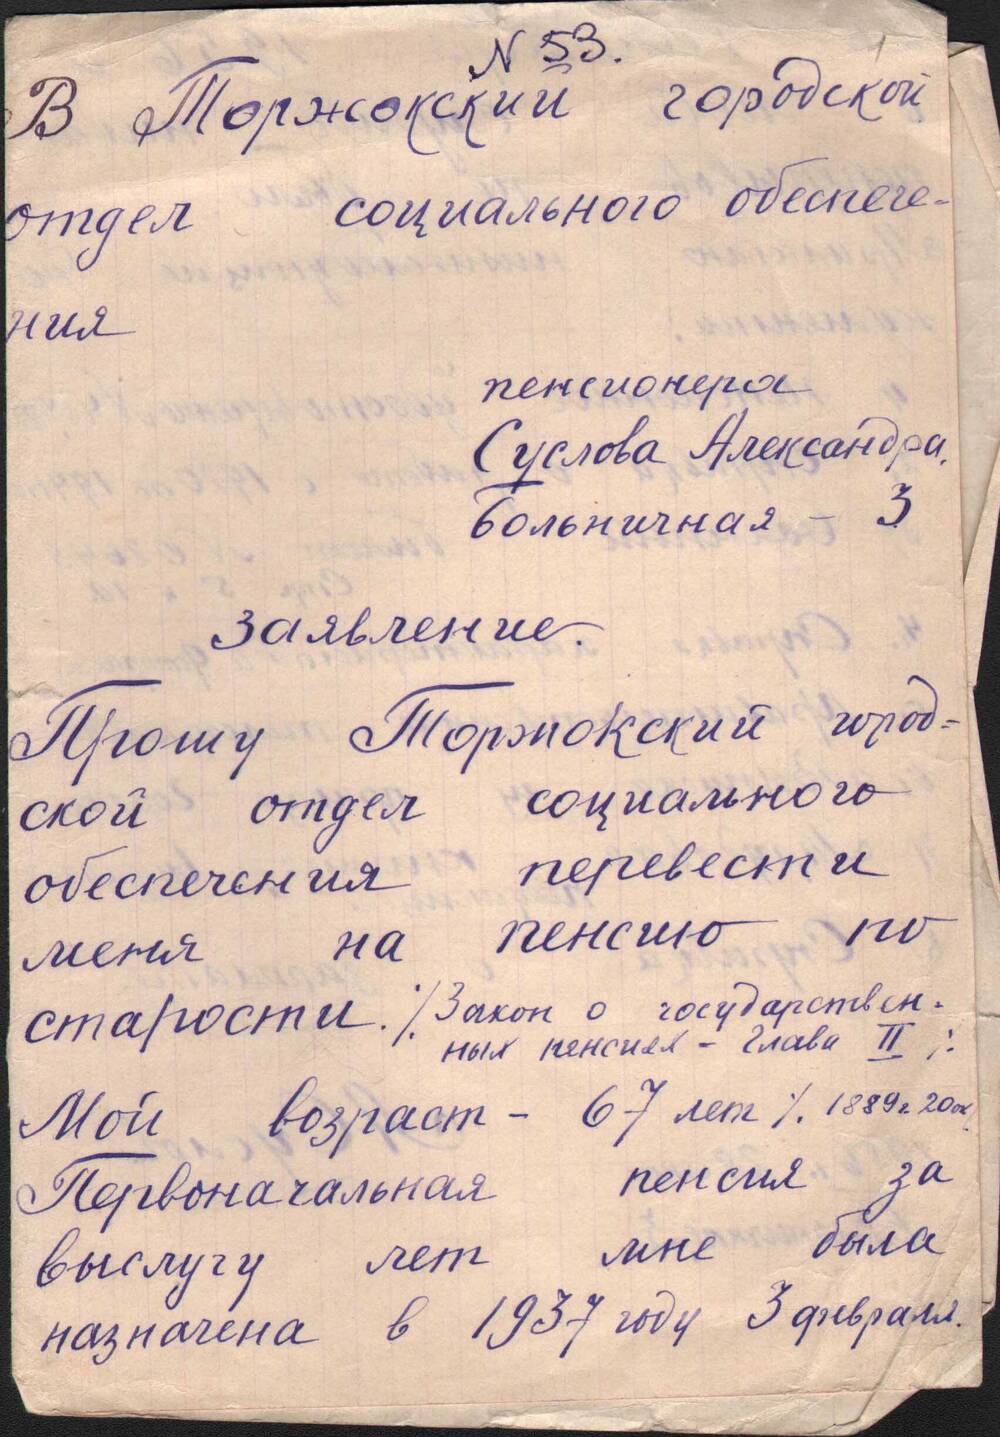 Заявлениеа. А. Суслова в горсобес от 28 сентября 1956 г. о переводе его с пенсии за выслугу лет на пенсию по старости